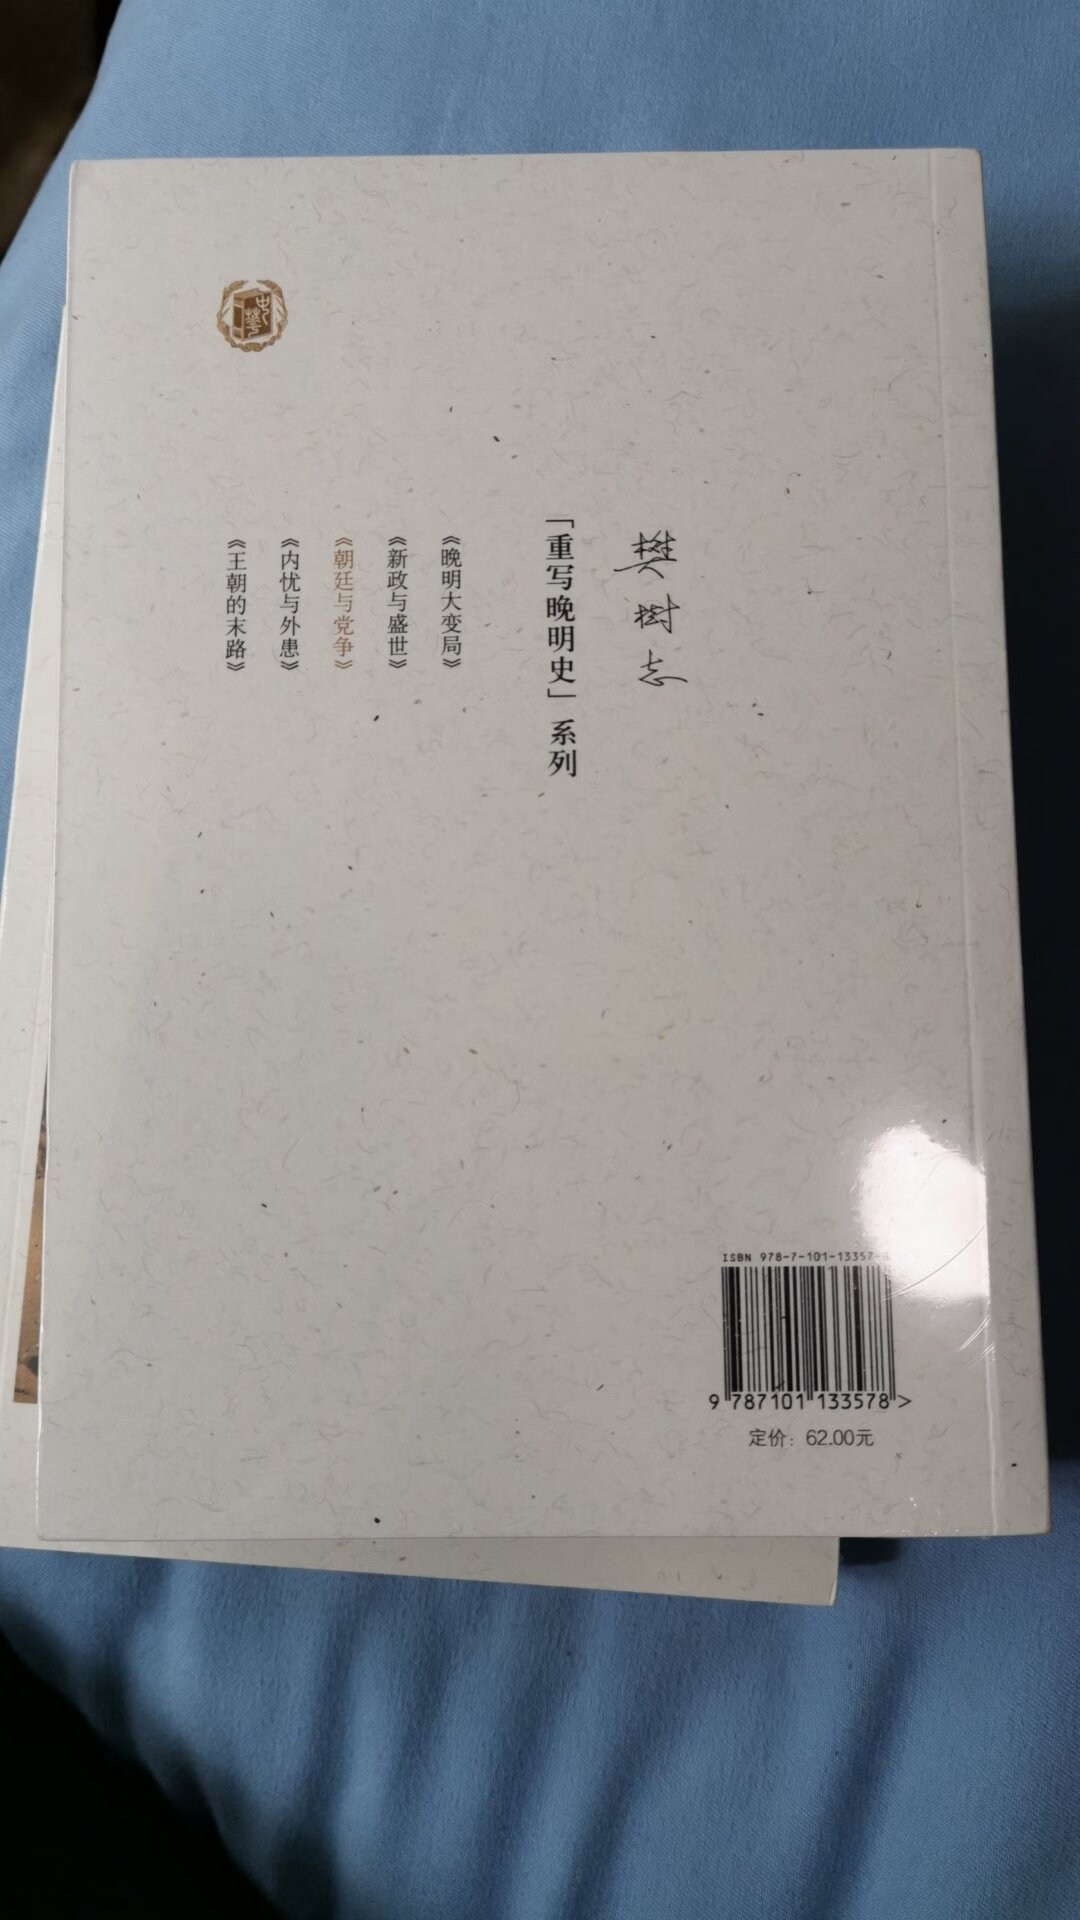 樊老先生重写晚明史系列第三部，中华书局出版，是我感兴趣的内容，质量也有保证。包装完好，送过来的时候书还是热的，当天送达，这么热的天辛苦快递小哥了。